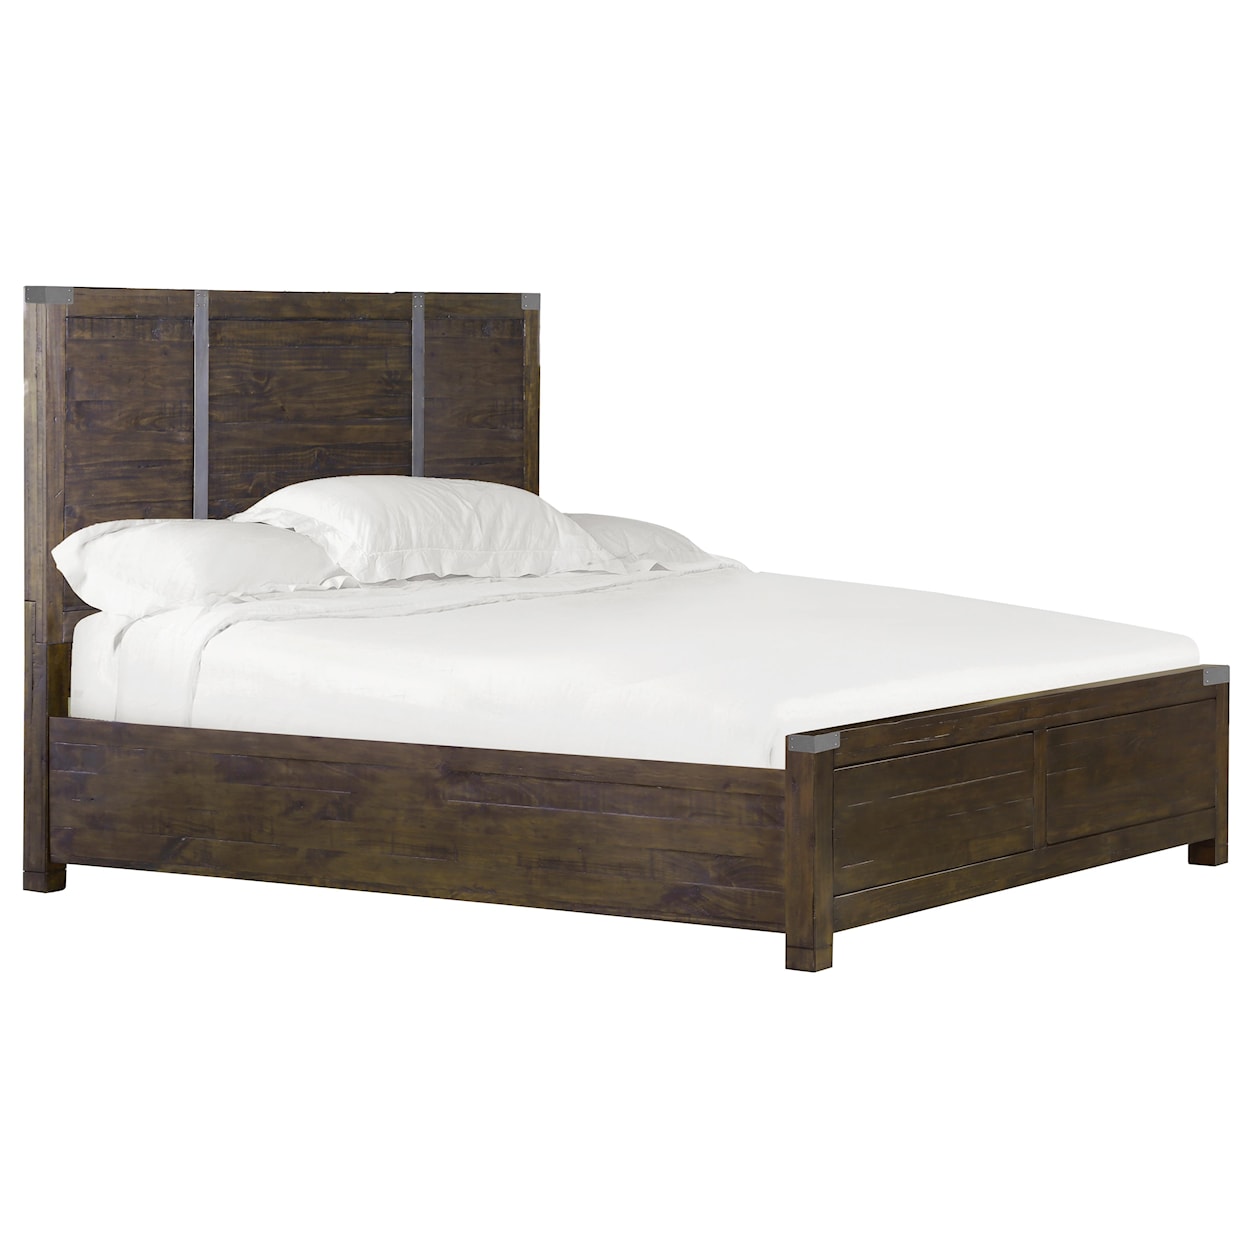 Belfort Select Pine Hill Bedroom Queen Panel Bed